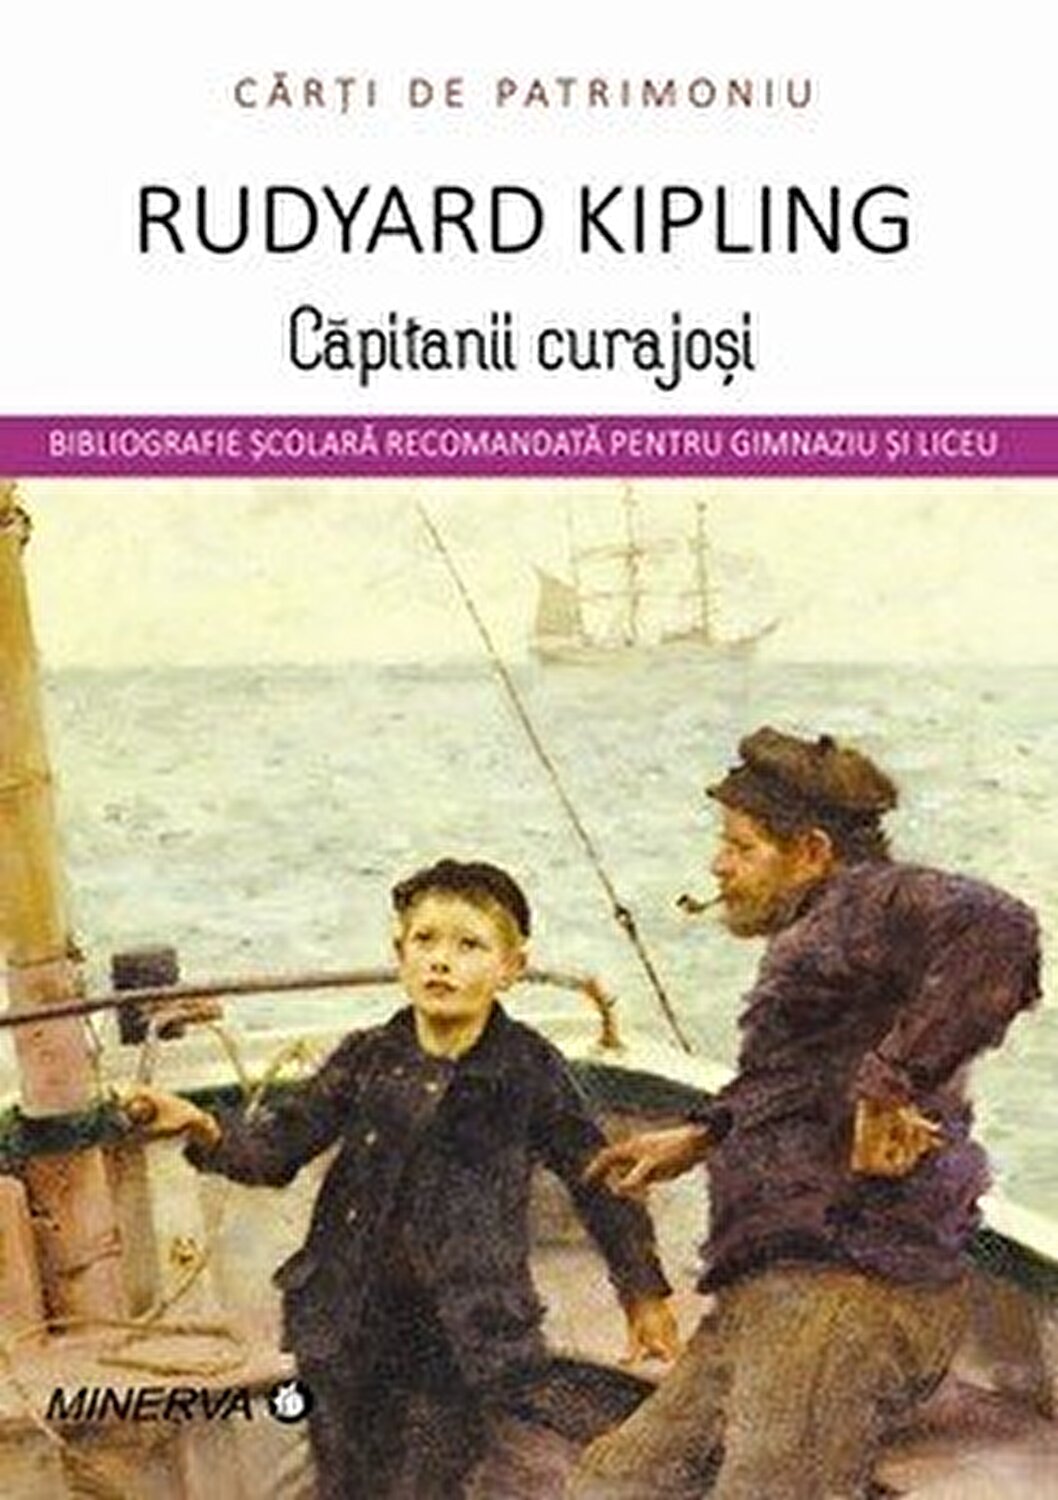 Capitanii curajosi | Rudyard Kipling carturesti 2022